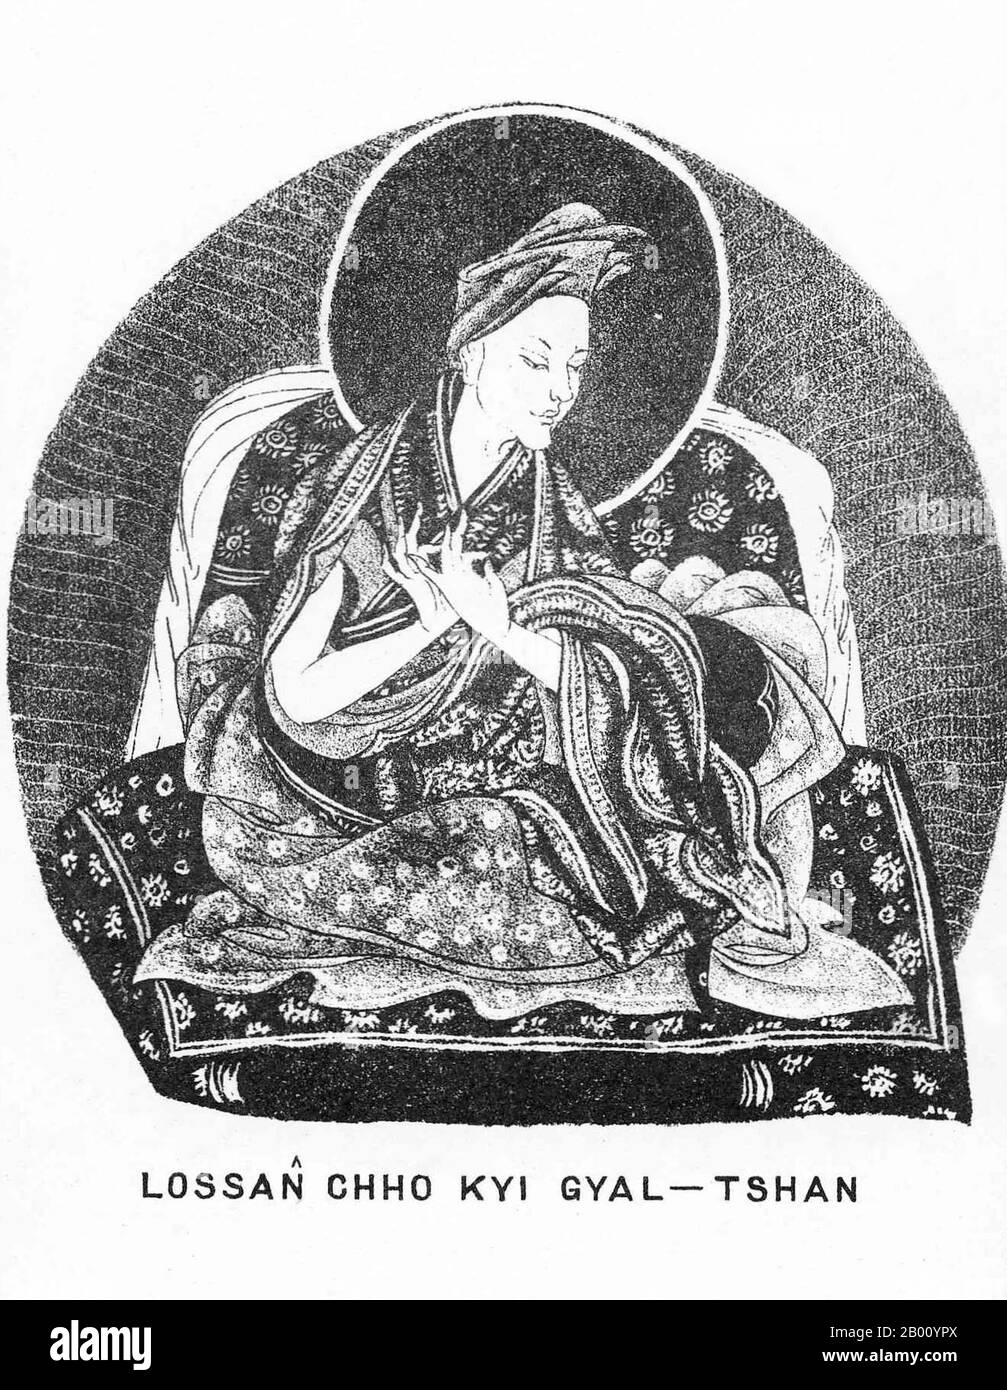 Cina/Tibet: Lobsang Chökyi Gyaltsen, 4° Panchen lama (1570–1662). Illustrazione di Sarat Chandra Das (1849-1917), 1882. Il Panchen lama è il lama di più alto rango dopo il Dalai lama nella setta Gelugpa (DGE-lug-pa) del Buddismo tibetano (la setta che controllava il Tibet occidentale dal XVI secolo fino all'imposizione della sovranità cinese nel 1951). I successivi lamas di Panchen formano un lignaggio di reincarnazione tulku che si dice siano le incarnazioni del Buddha di Amitabha. Foto Stock